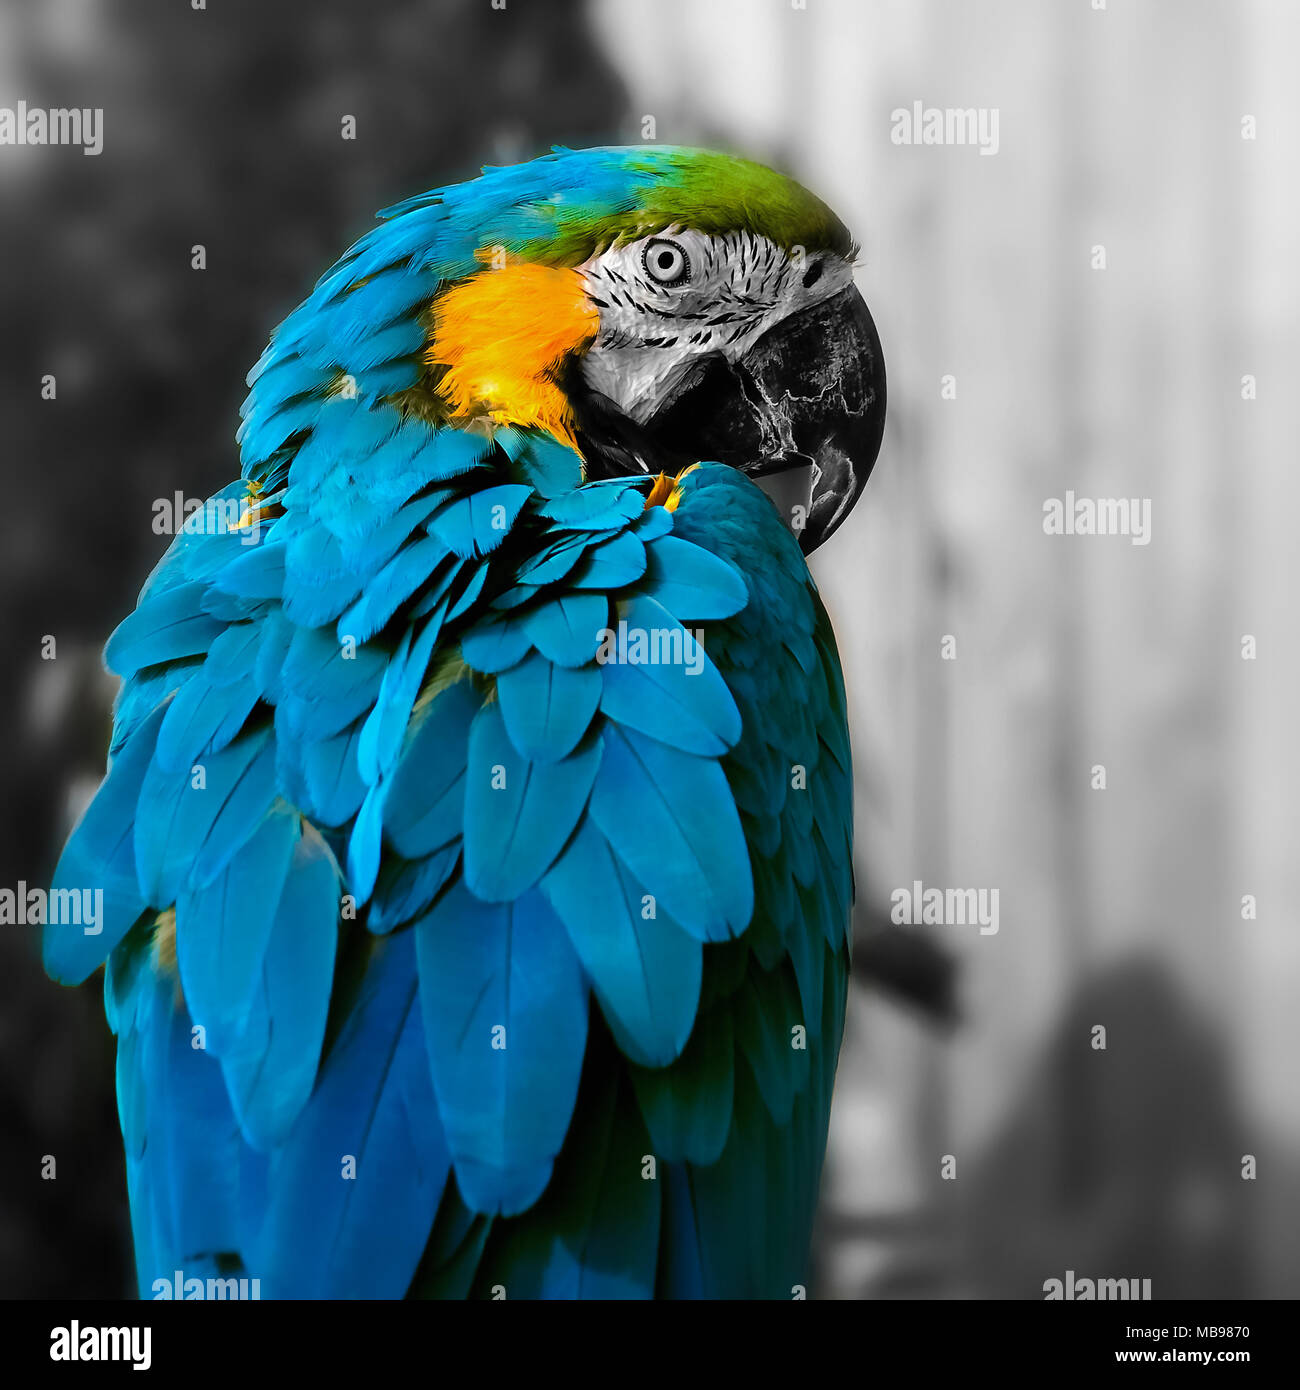 Macaw parrot composition carré portrait contact oculaire close up shot Banque D'Images